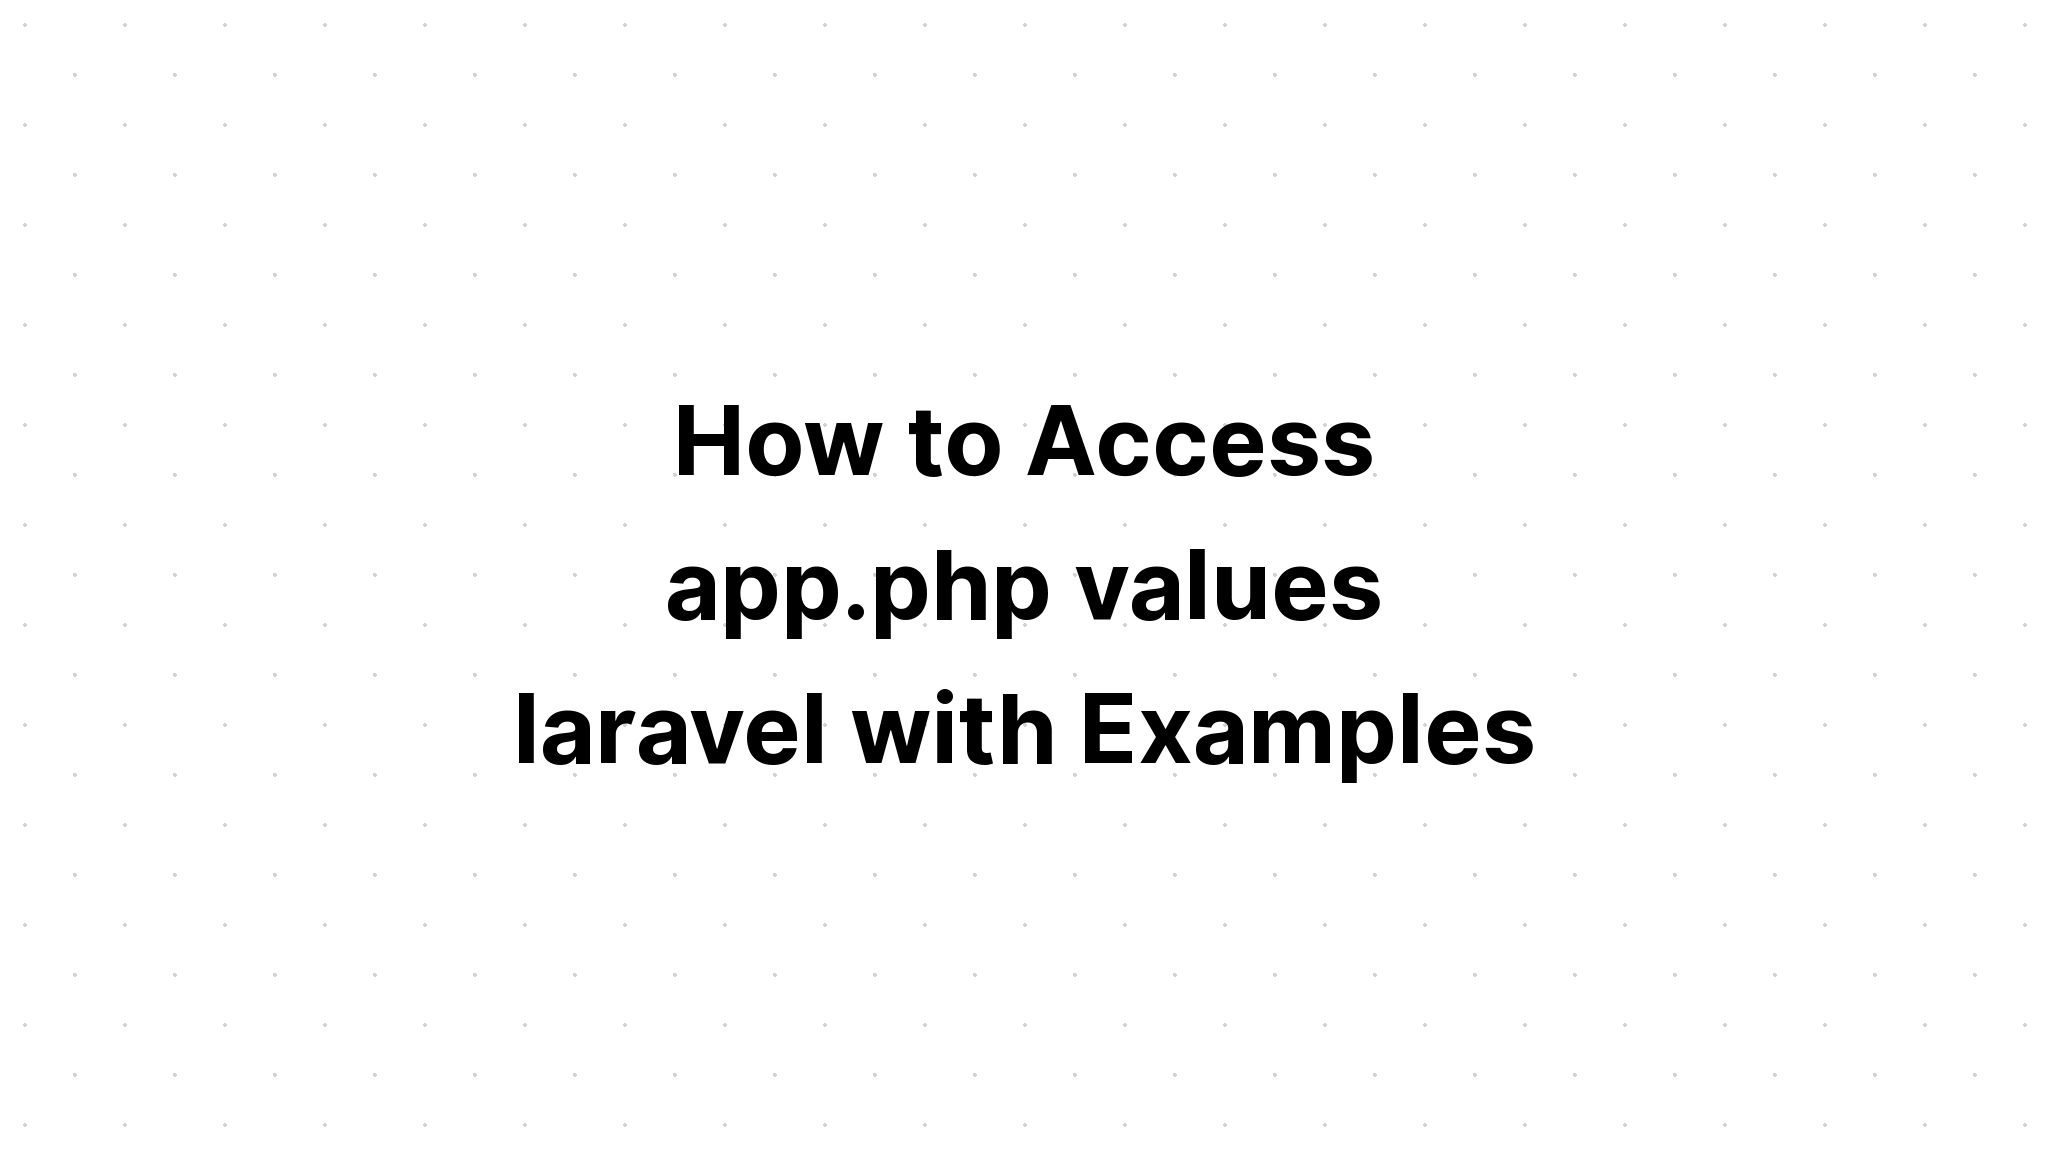 Cara Mengakses aplikasi. nilai php laravel dengan Contoh